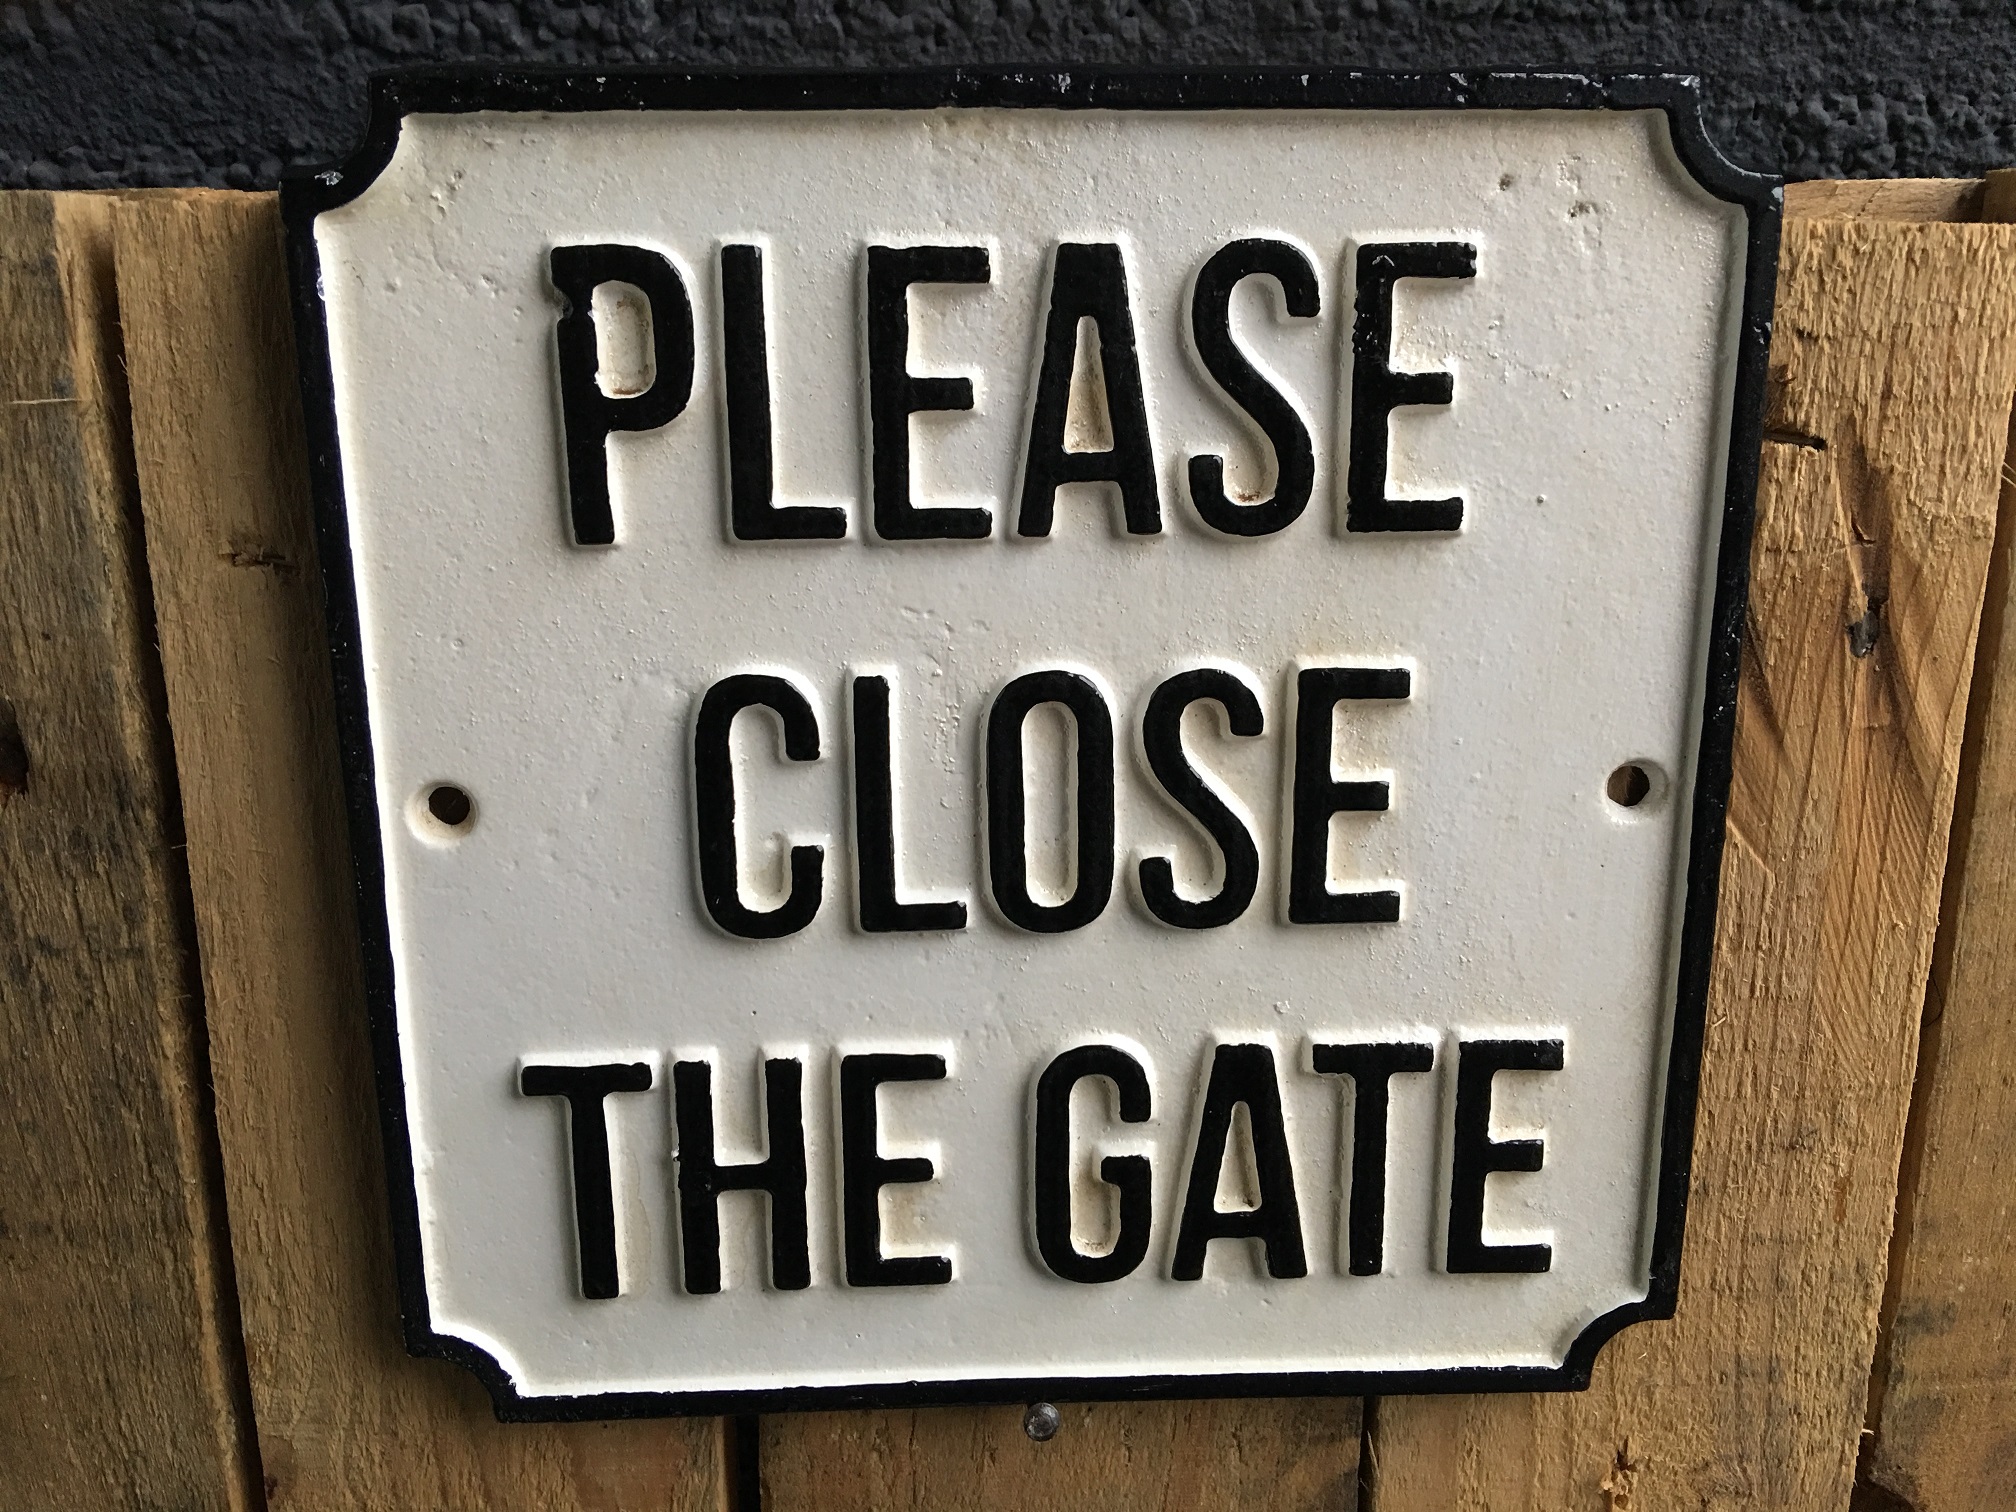 Schild emailliert 'Bitte schließen Sie das Tor' für Tür oder Tor